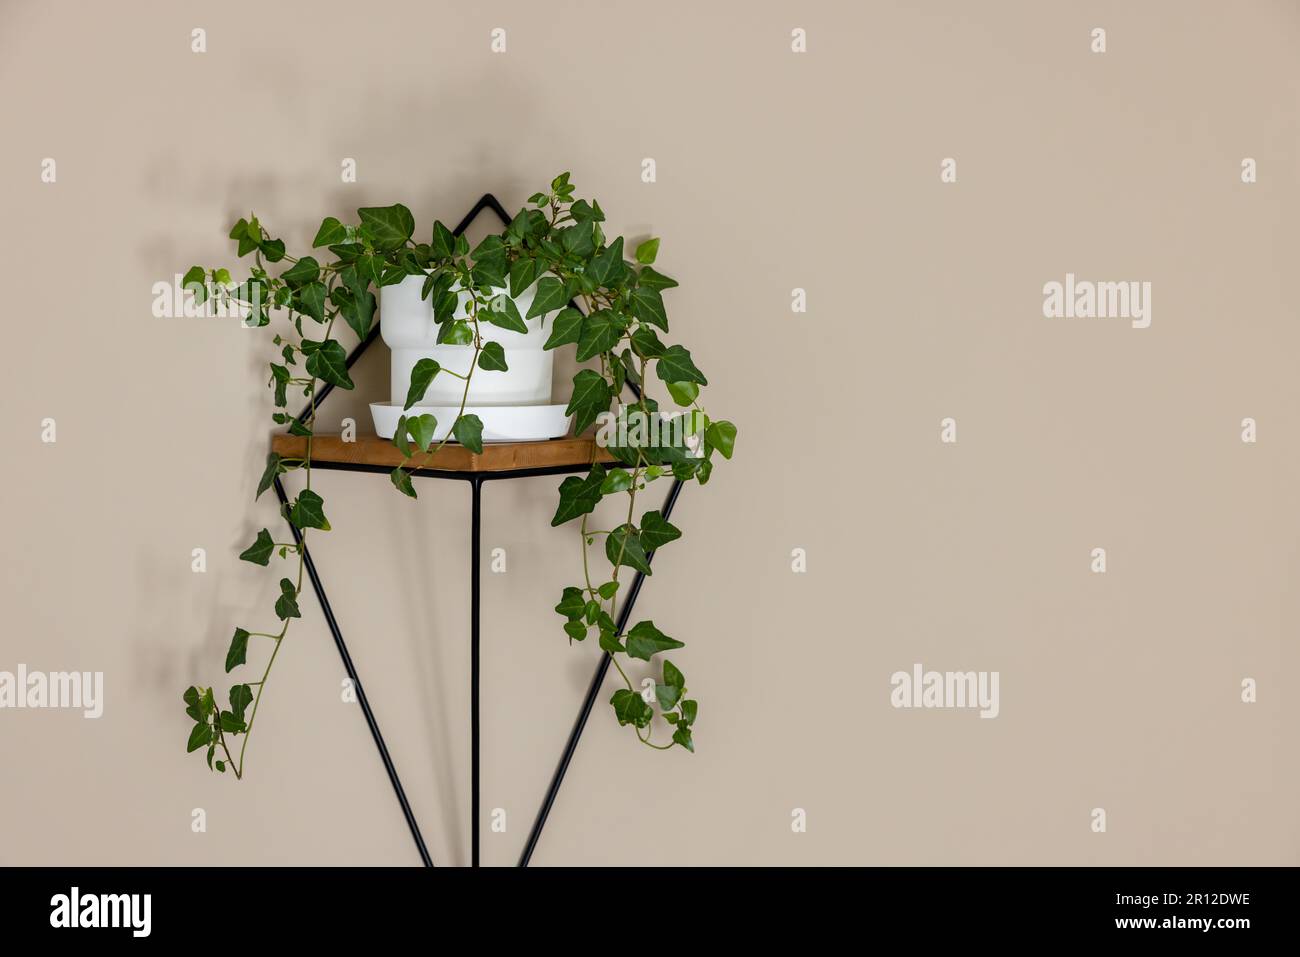 vaso hedera elica o edera pianta sulla parete scaffale nella stanza. spazio di copia Foto Stock